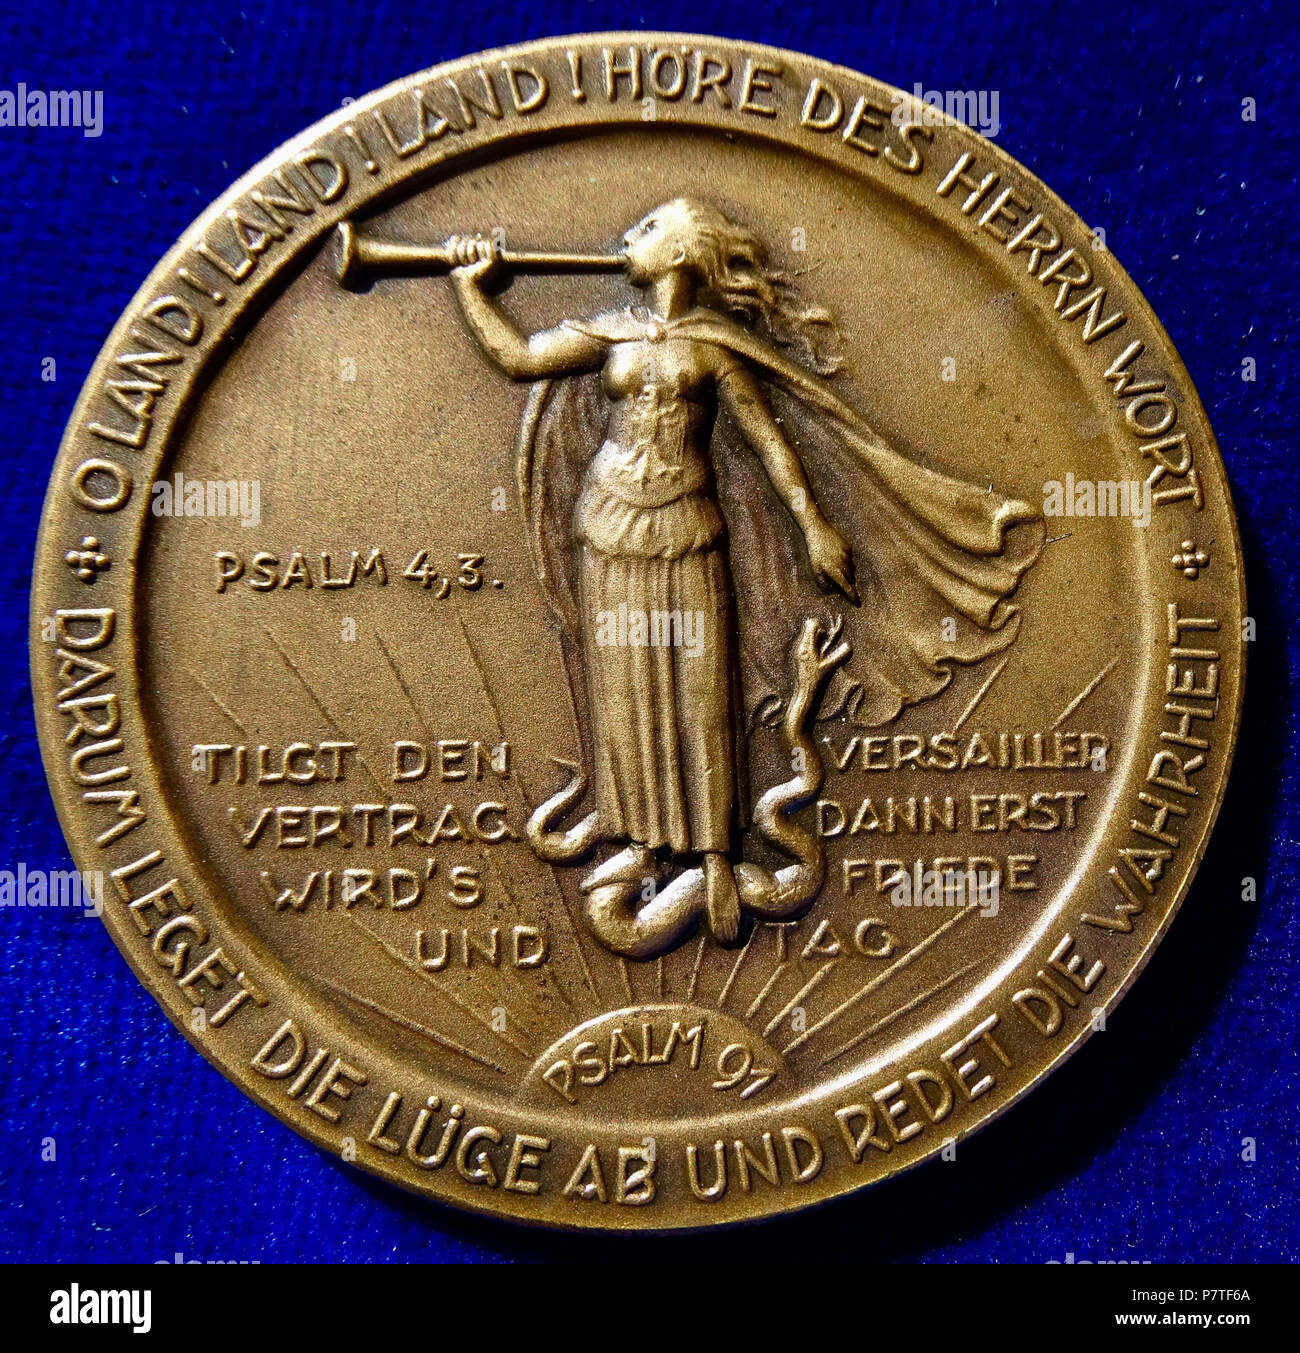 English: German Medal 1925, Opening of the Stockholm Universal Christian Conference in Sweden. Bronze medallion, d. = 51 mm. Hindenburg, Paul v. Beneckendorff und v. H., 1847 Posen, Duchy of Posen, Prussia (now Poznań, Poland) - 1934 Neudeck, East Prussia, today Ogrodzieniec, Poland. 4 lines below portrait l.: 'BOTSCHAFT AN DIE STOCKHOLMER KONFERENZ 18. 8. 1925', surrounding: '+ MÖGEN IHRE BERATUNGEN IN DEM GEIST DER LIEBE UND DES SICHVERSTEHENS DER VÖLKER SICH VOLLZIEHEN +'/ 5 lines divided by l. standing Germania blowing a herald trumpet, and standing on a snake symbolising the Treaty of Ver Stock Photo